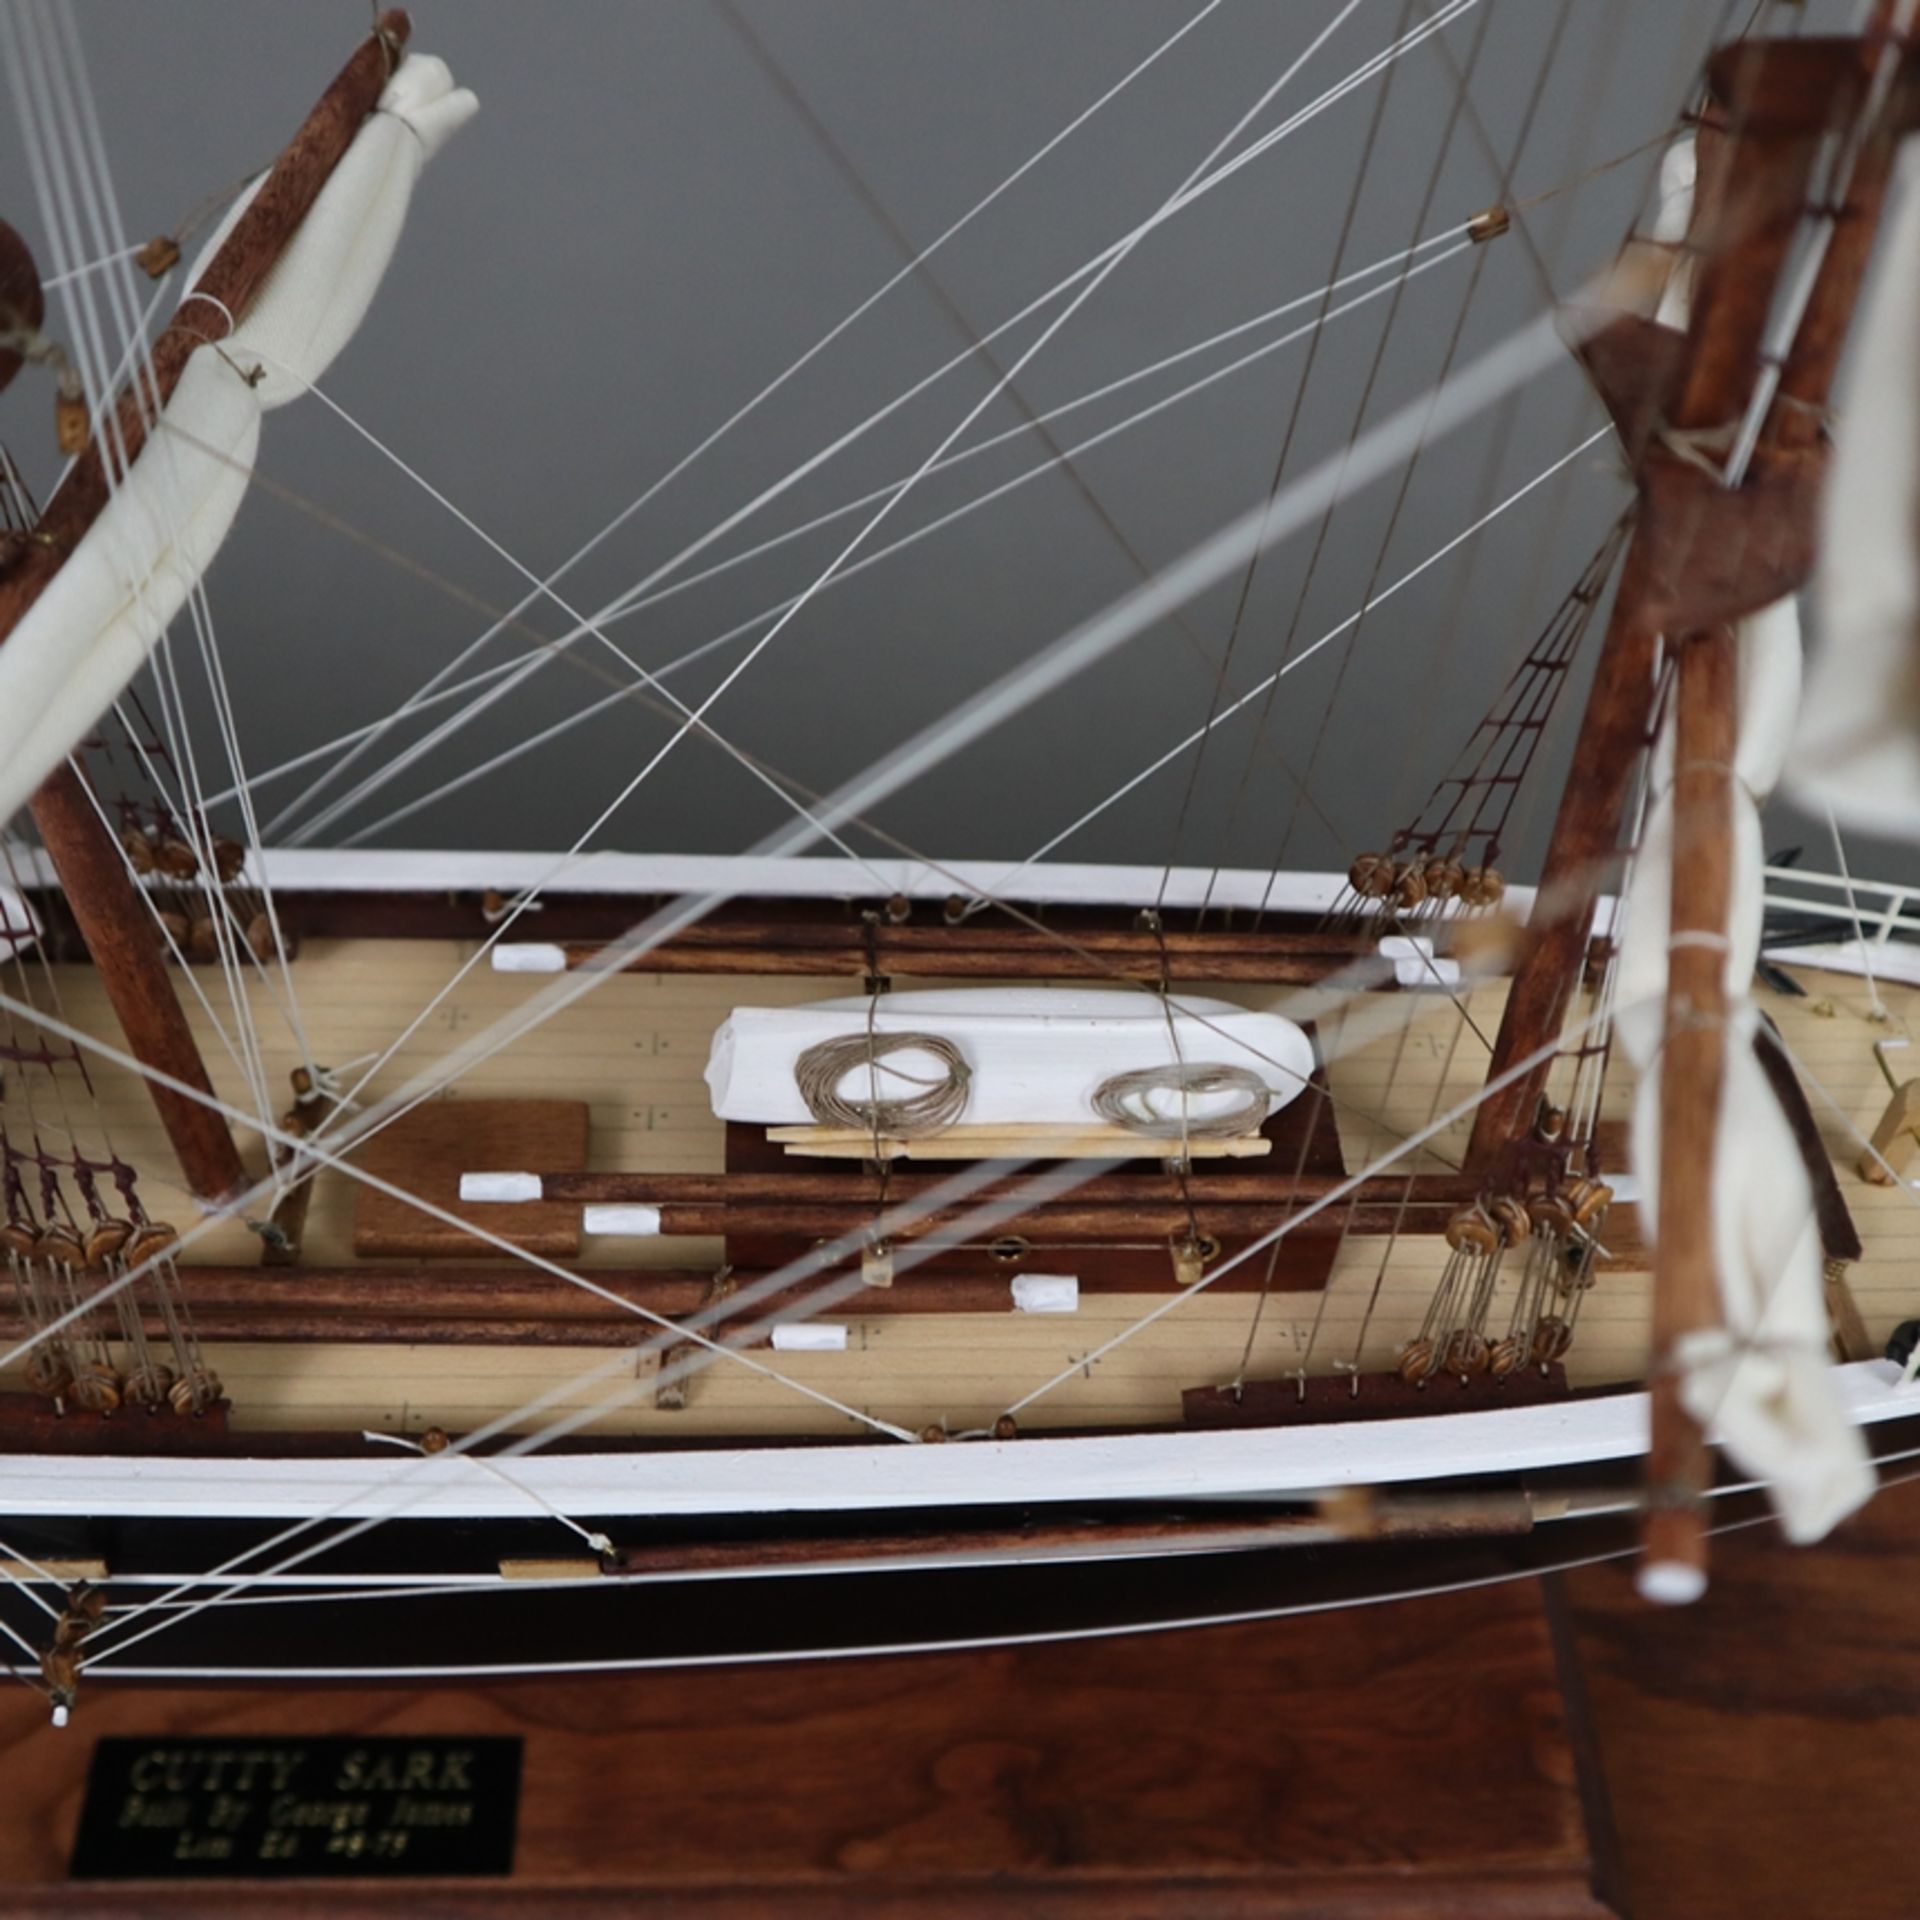 Modellschiff "Cutty Sark" im Schaukasten - maßstabgerechter Nachbau des englischen Tee- und Wollkli - Bild 7 aus 13